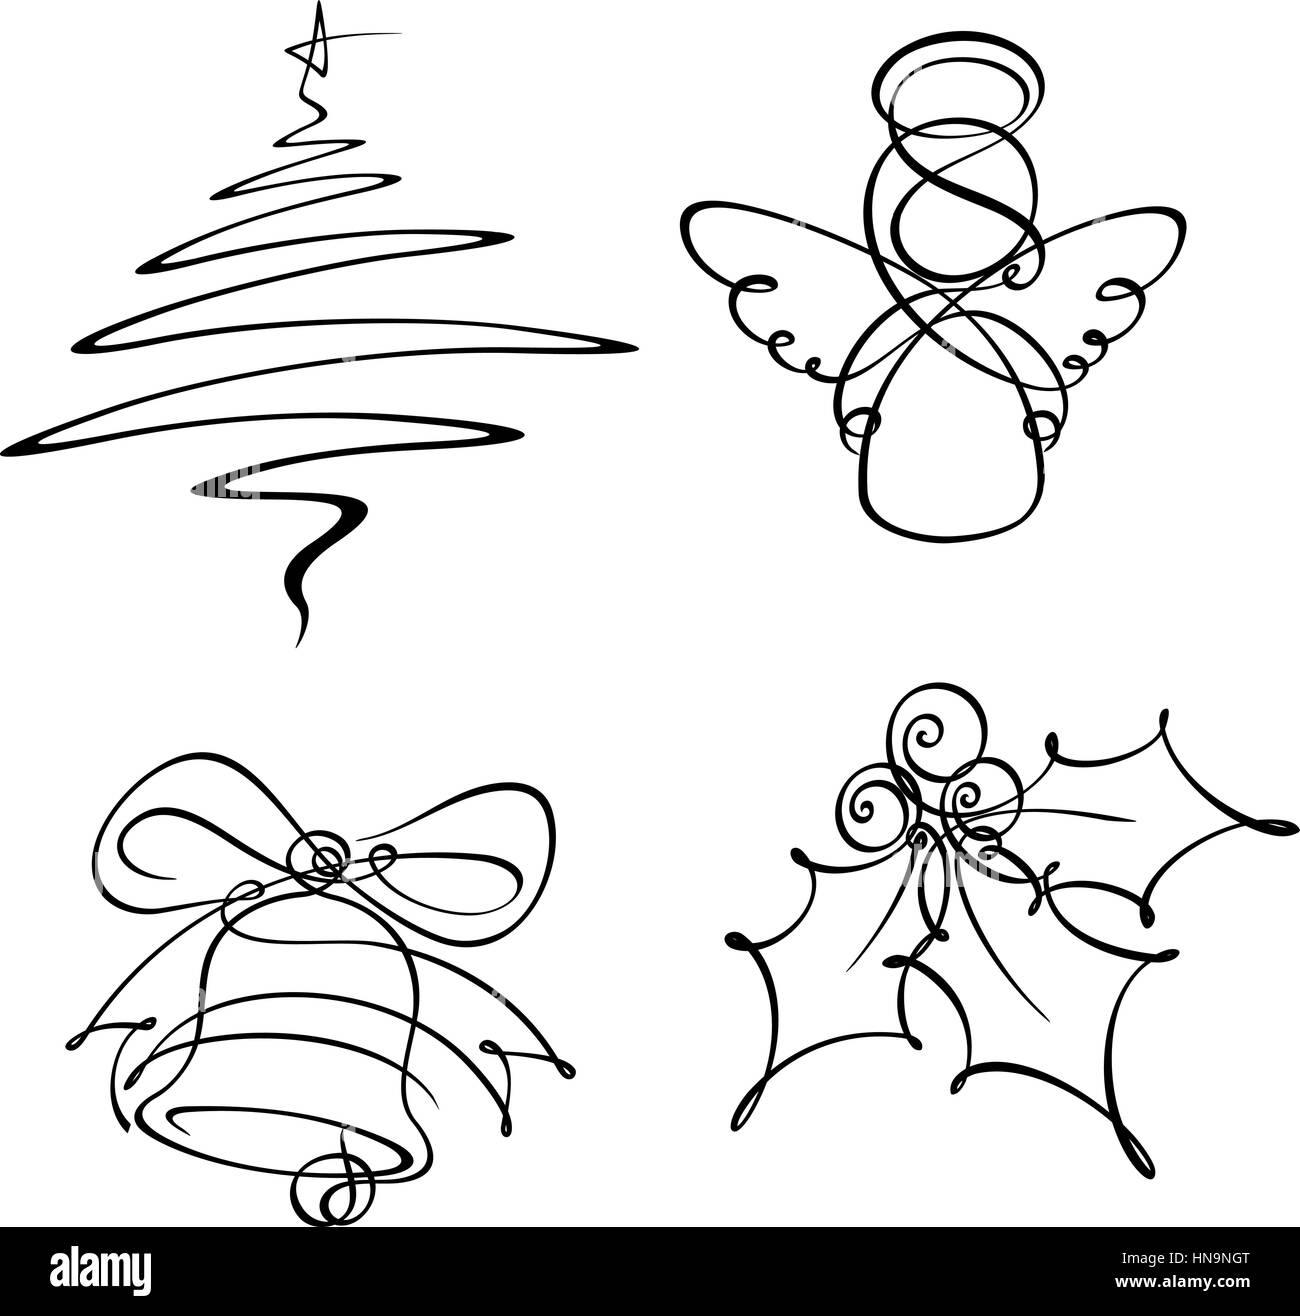 Mano-annegato line art icone. L'albero di Natale e Angelo sono state sviluppate con una singola linea la campana con due e la holly berry con tre. Illustrazione Vettoriale